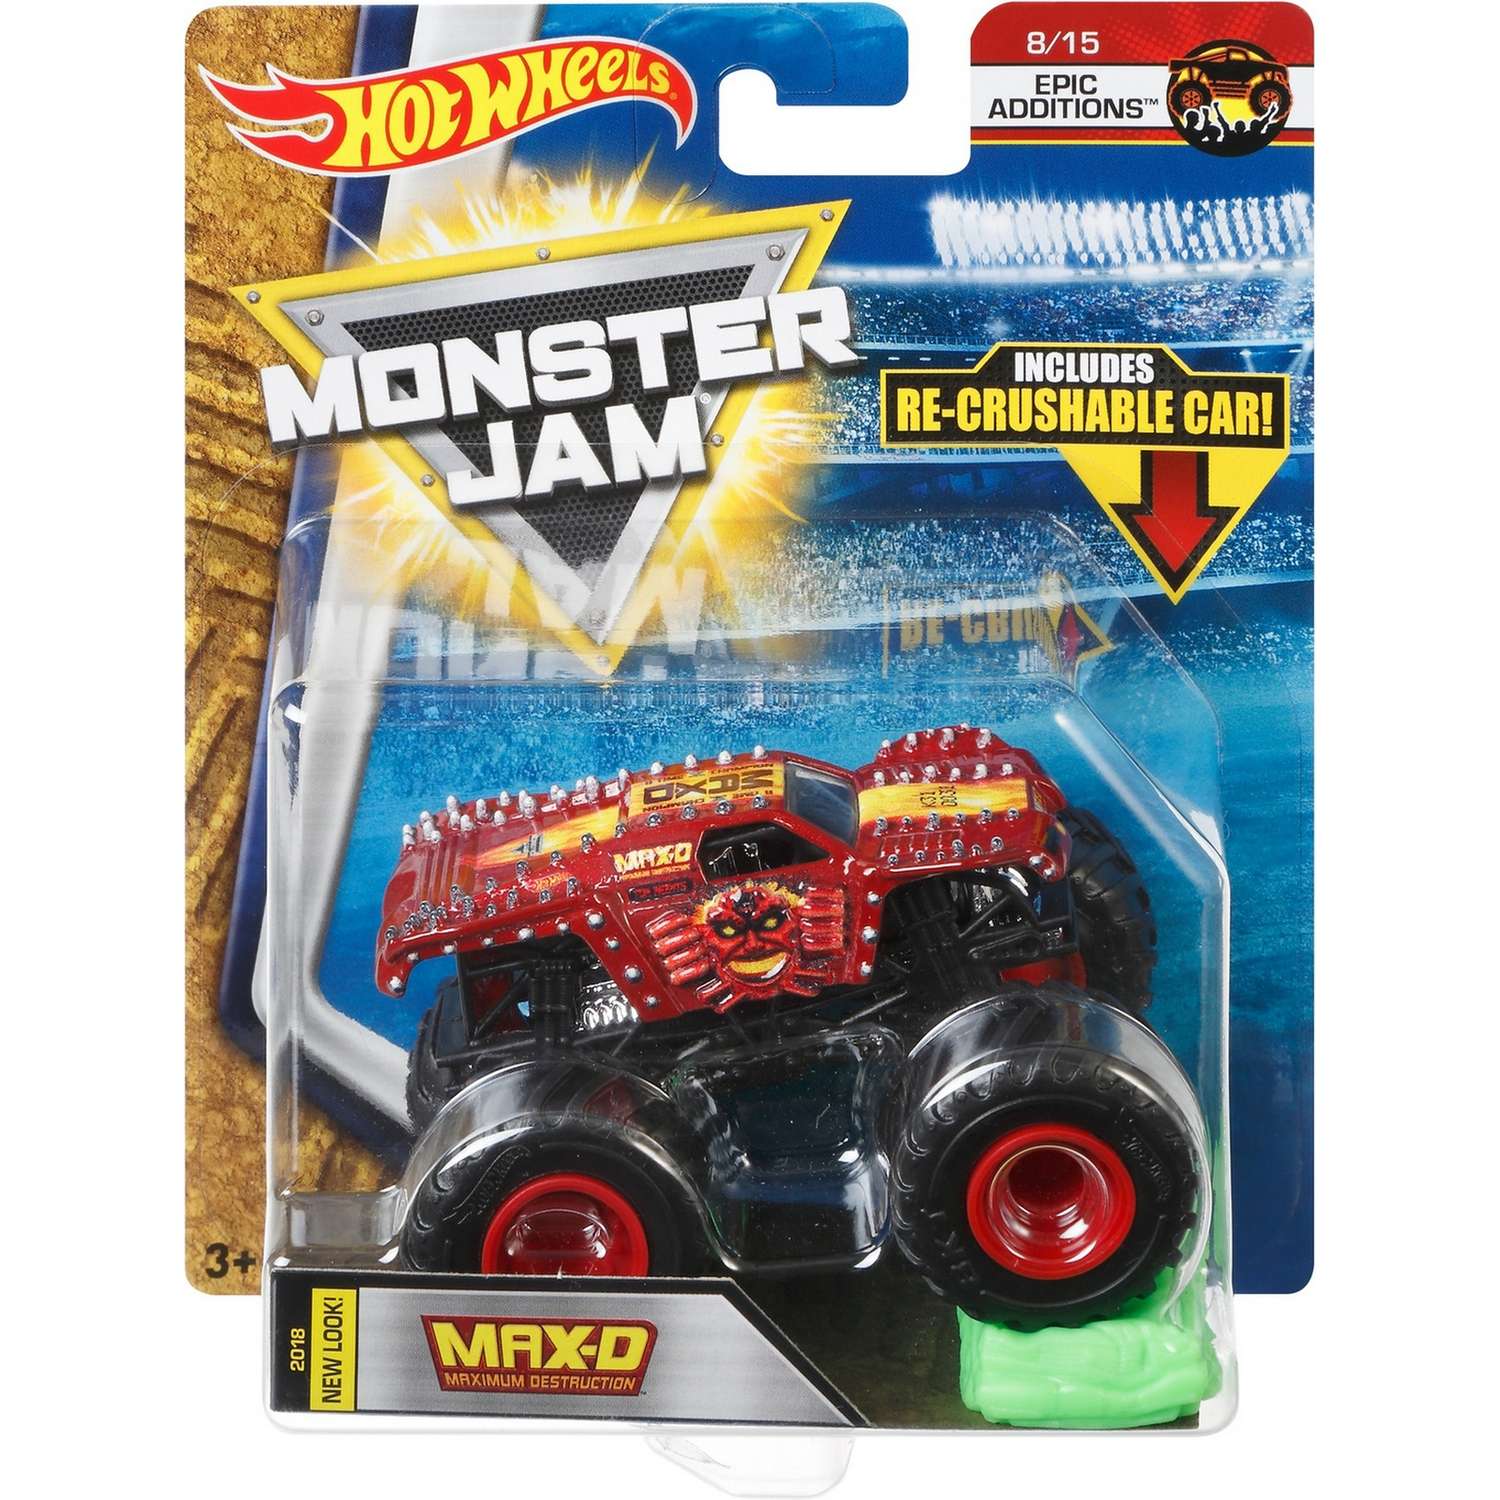 Машина Hot Wheels Monster Jam 1:64 Epic Edditions Max-D FLW99 21572 - фото 2